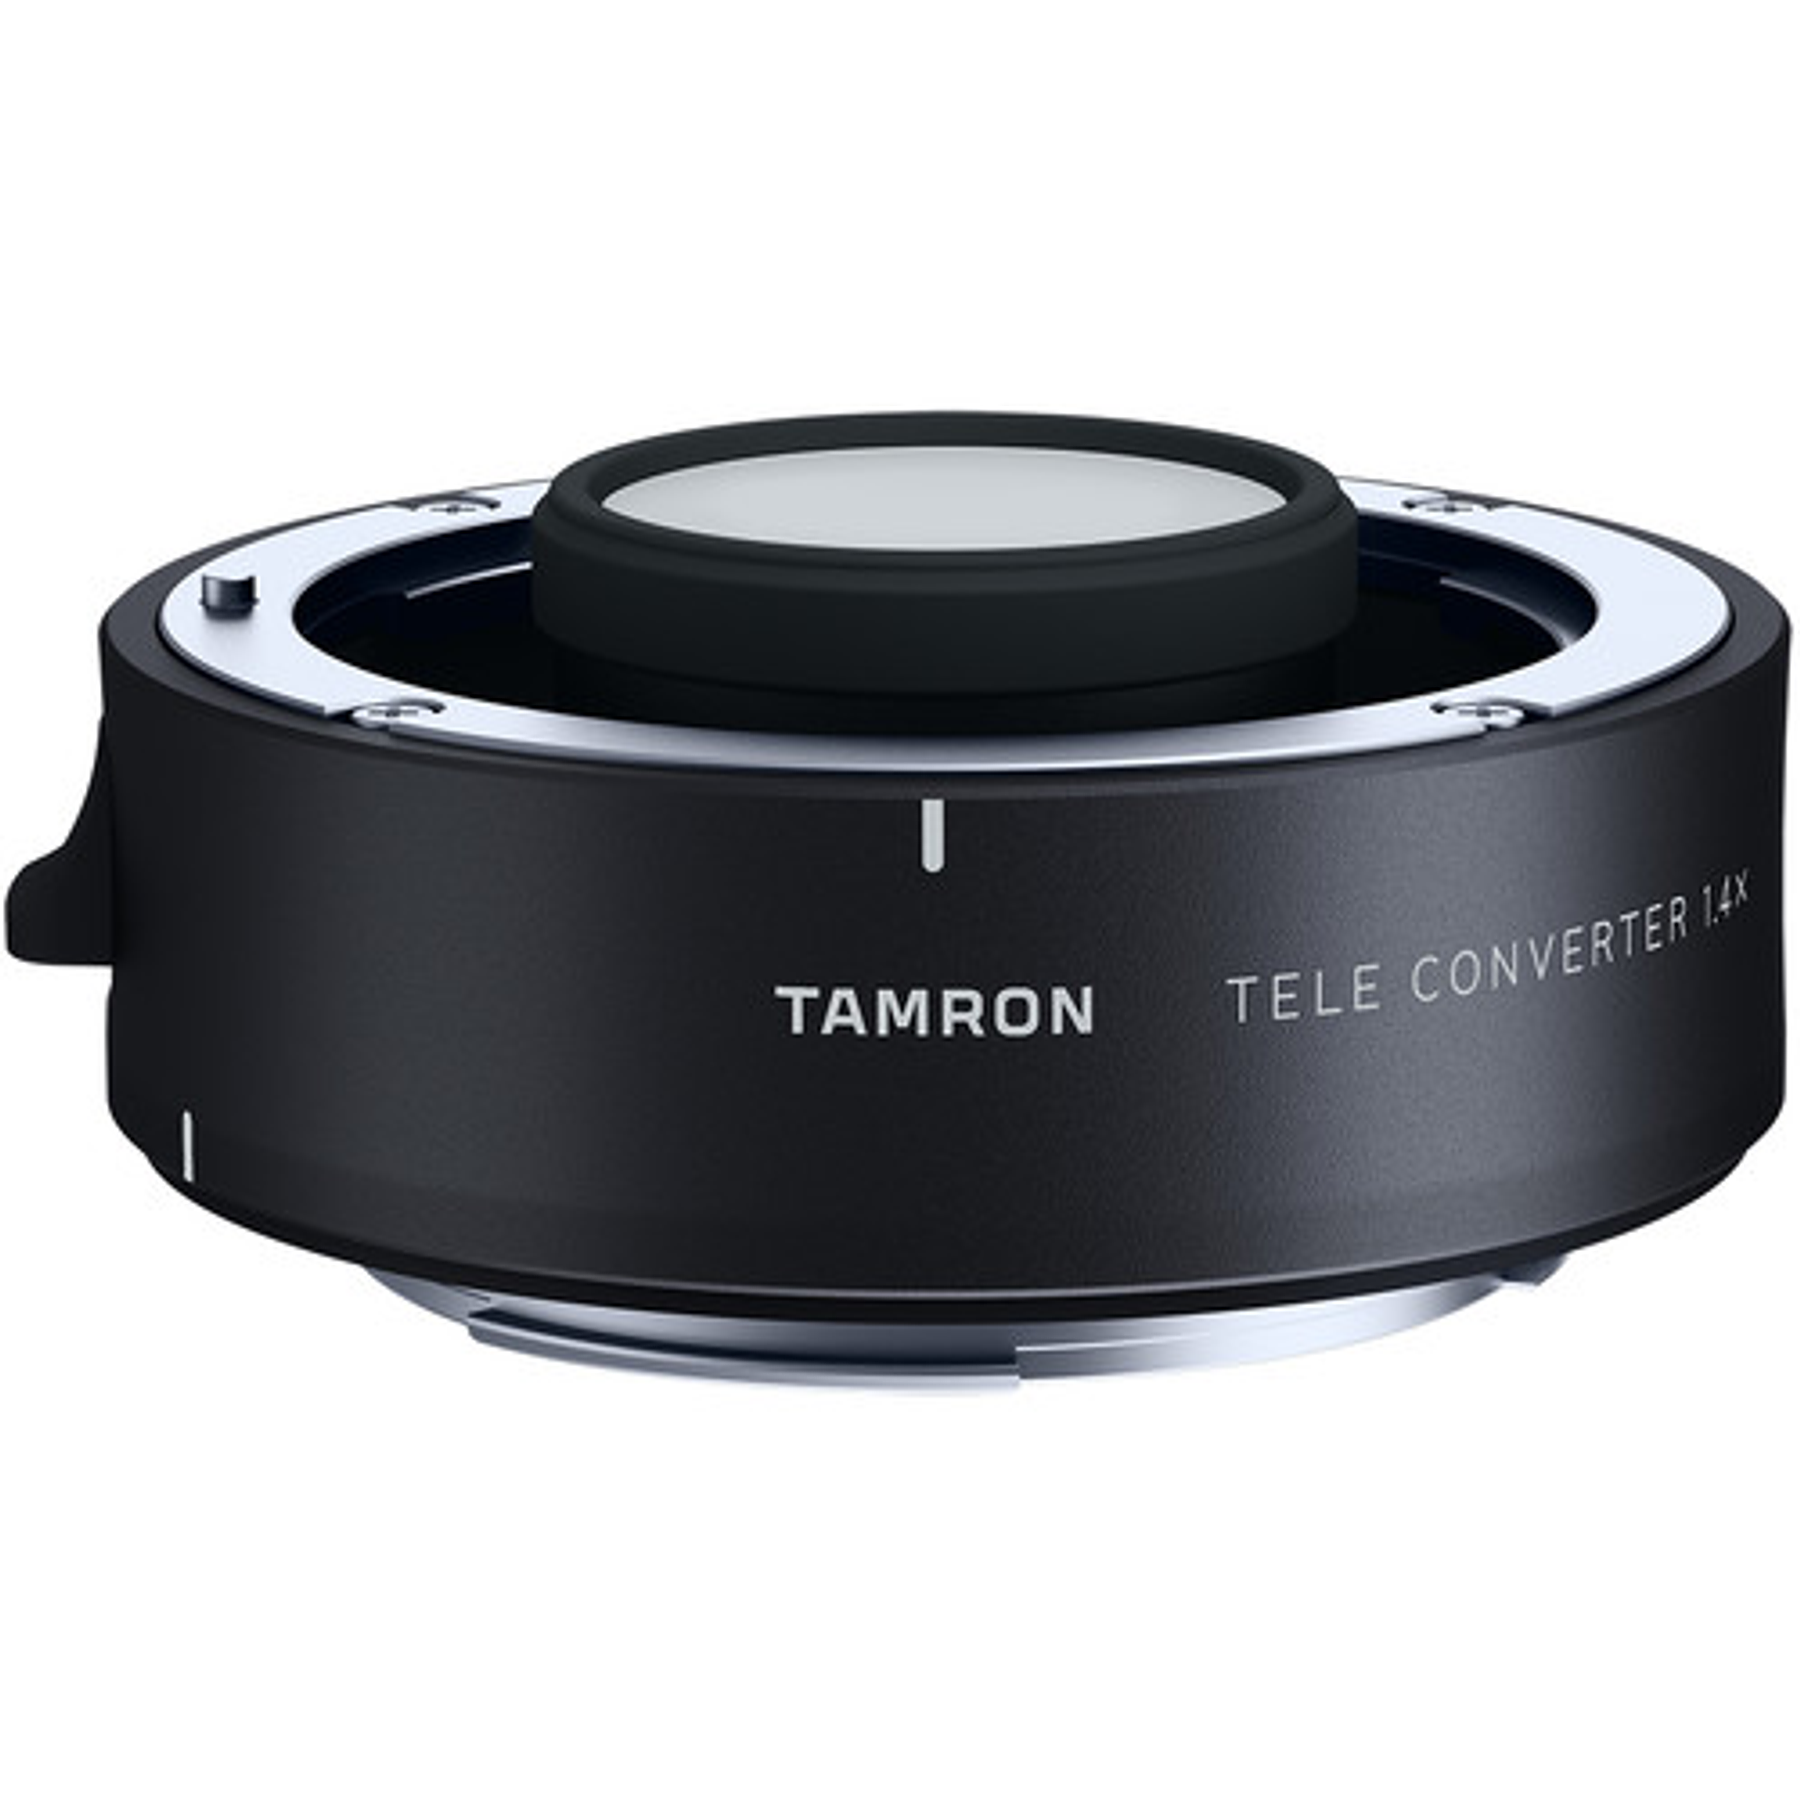 Tamron TeleConverter 1,4X para lentes A022 SP 150-600 G2, A025, A034 y A035 para Canon/Nikon